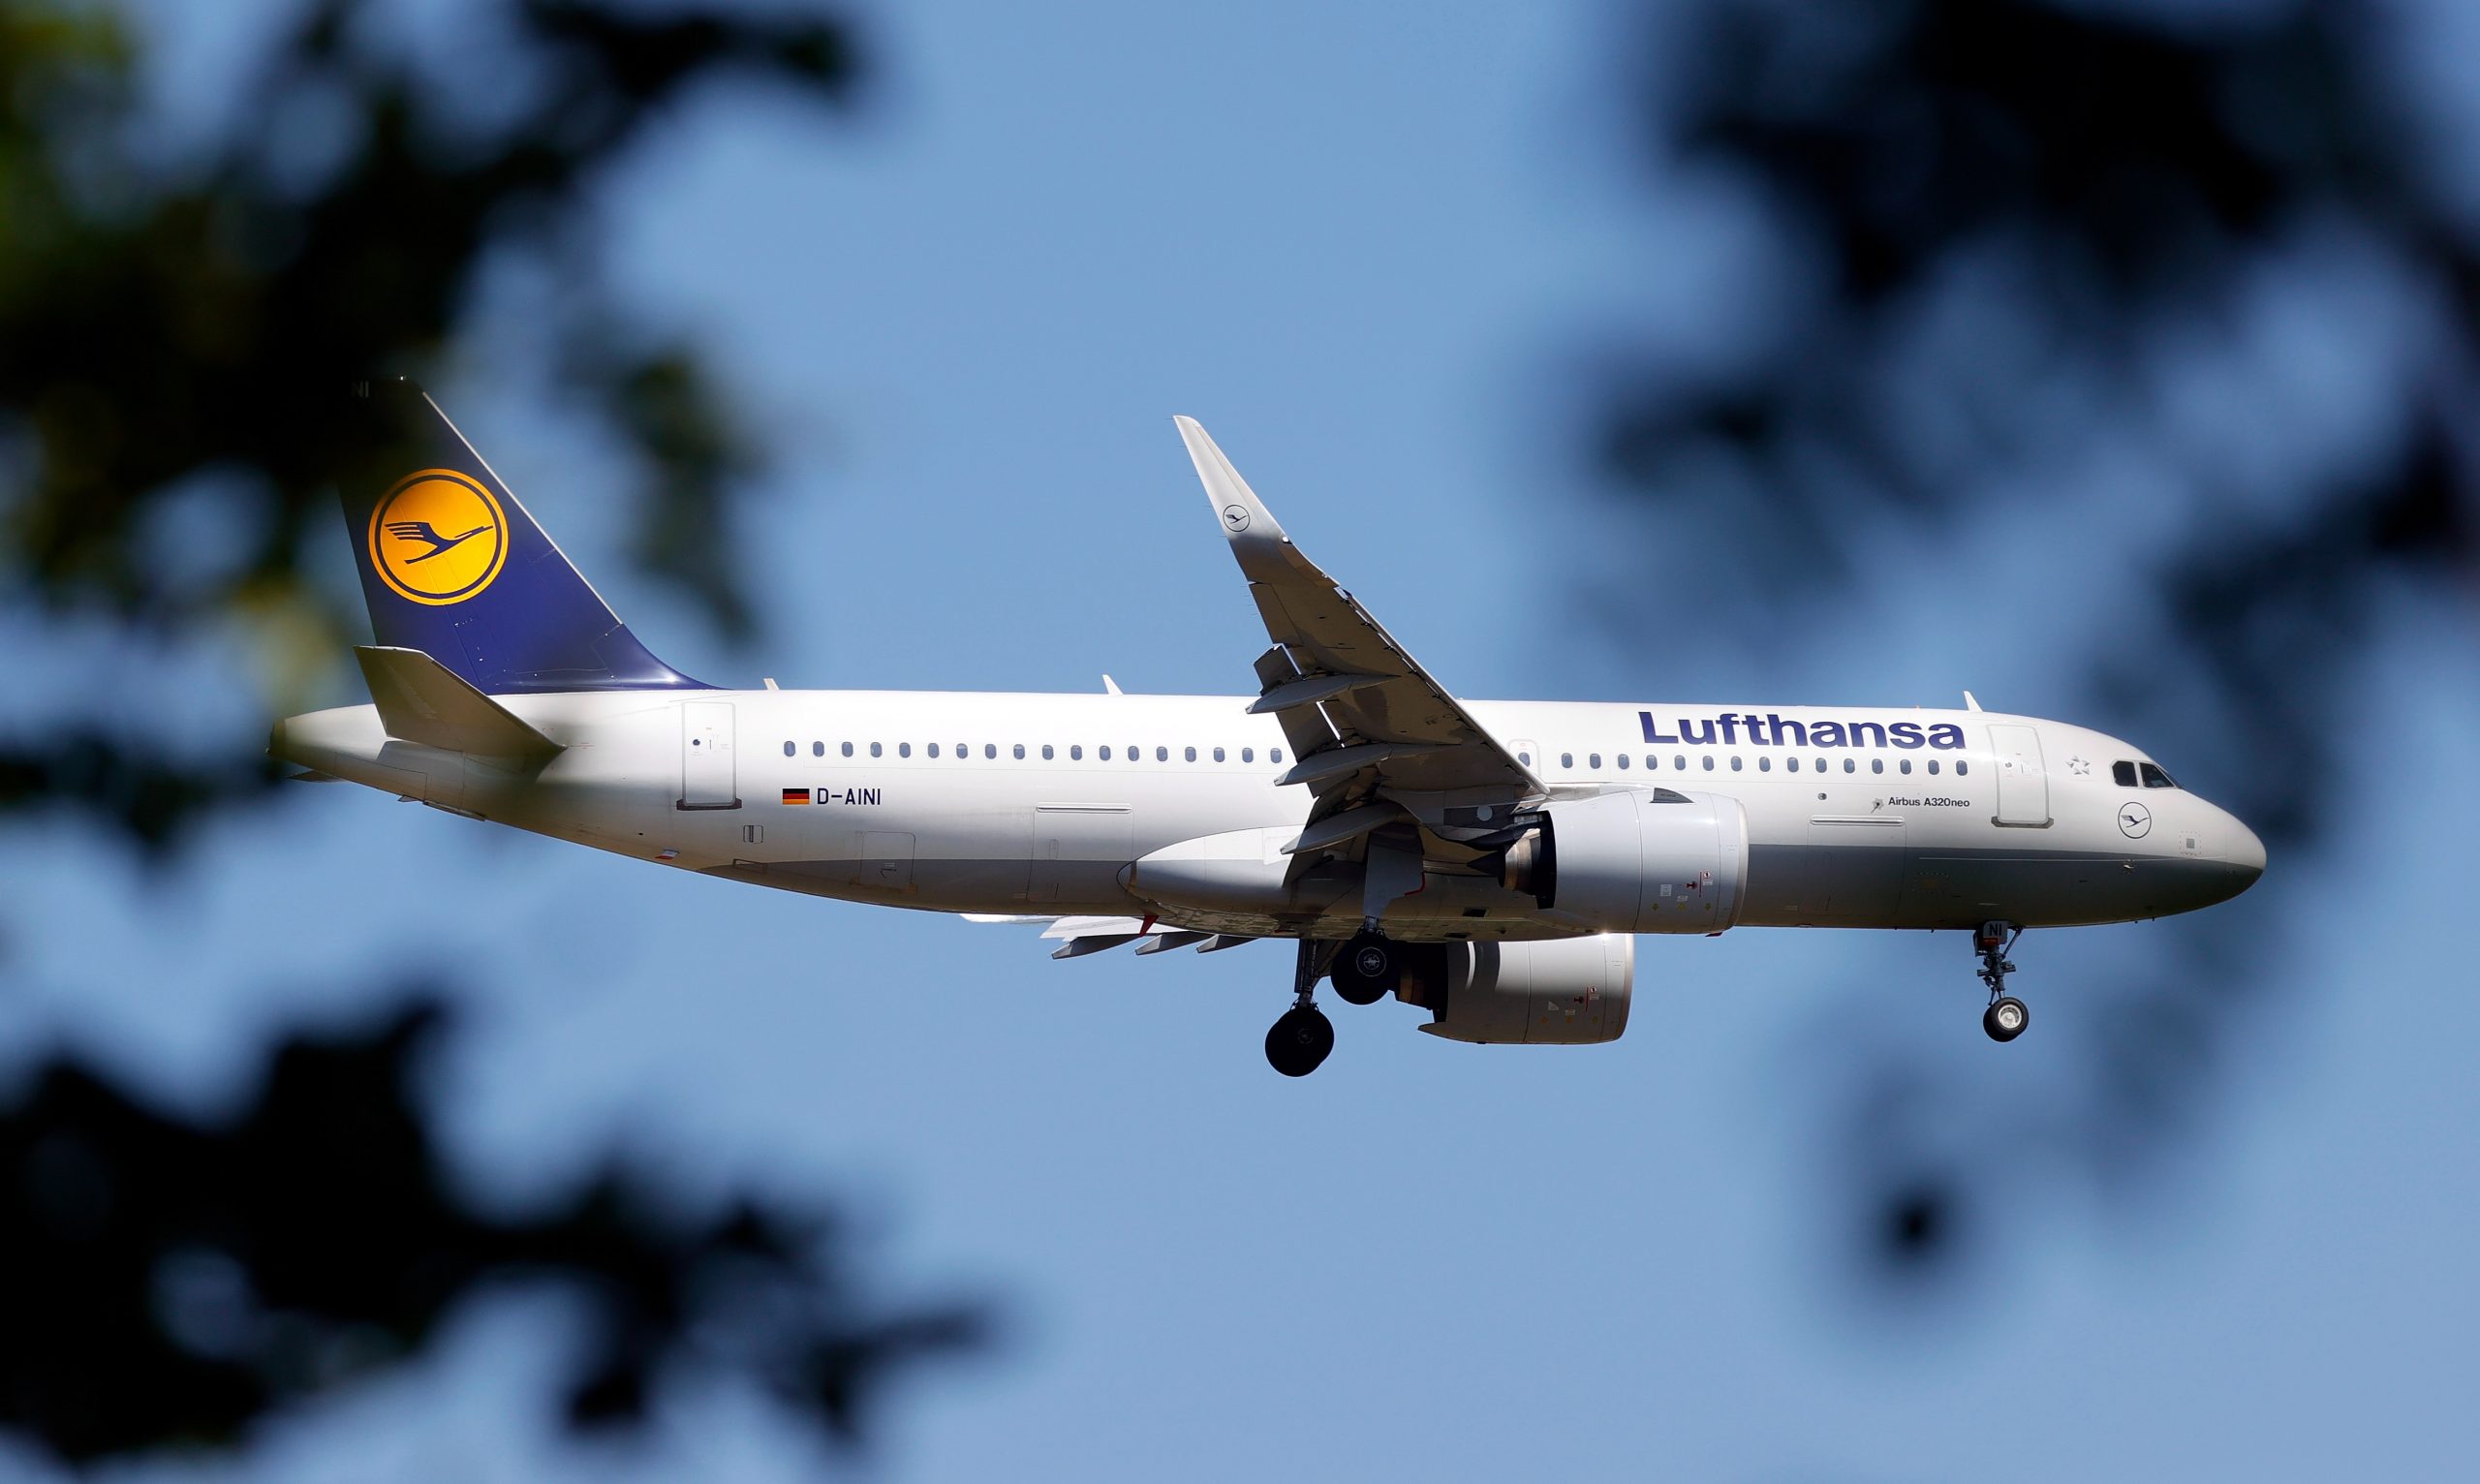 Een toestel van Lufthansa landt op het vliegveld van Frankfurt am Main. Foto: EPA/RONALD WITTEK